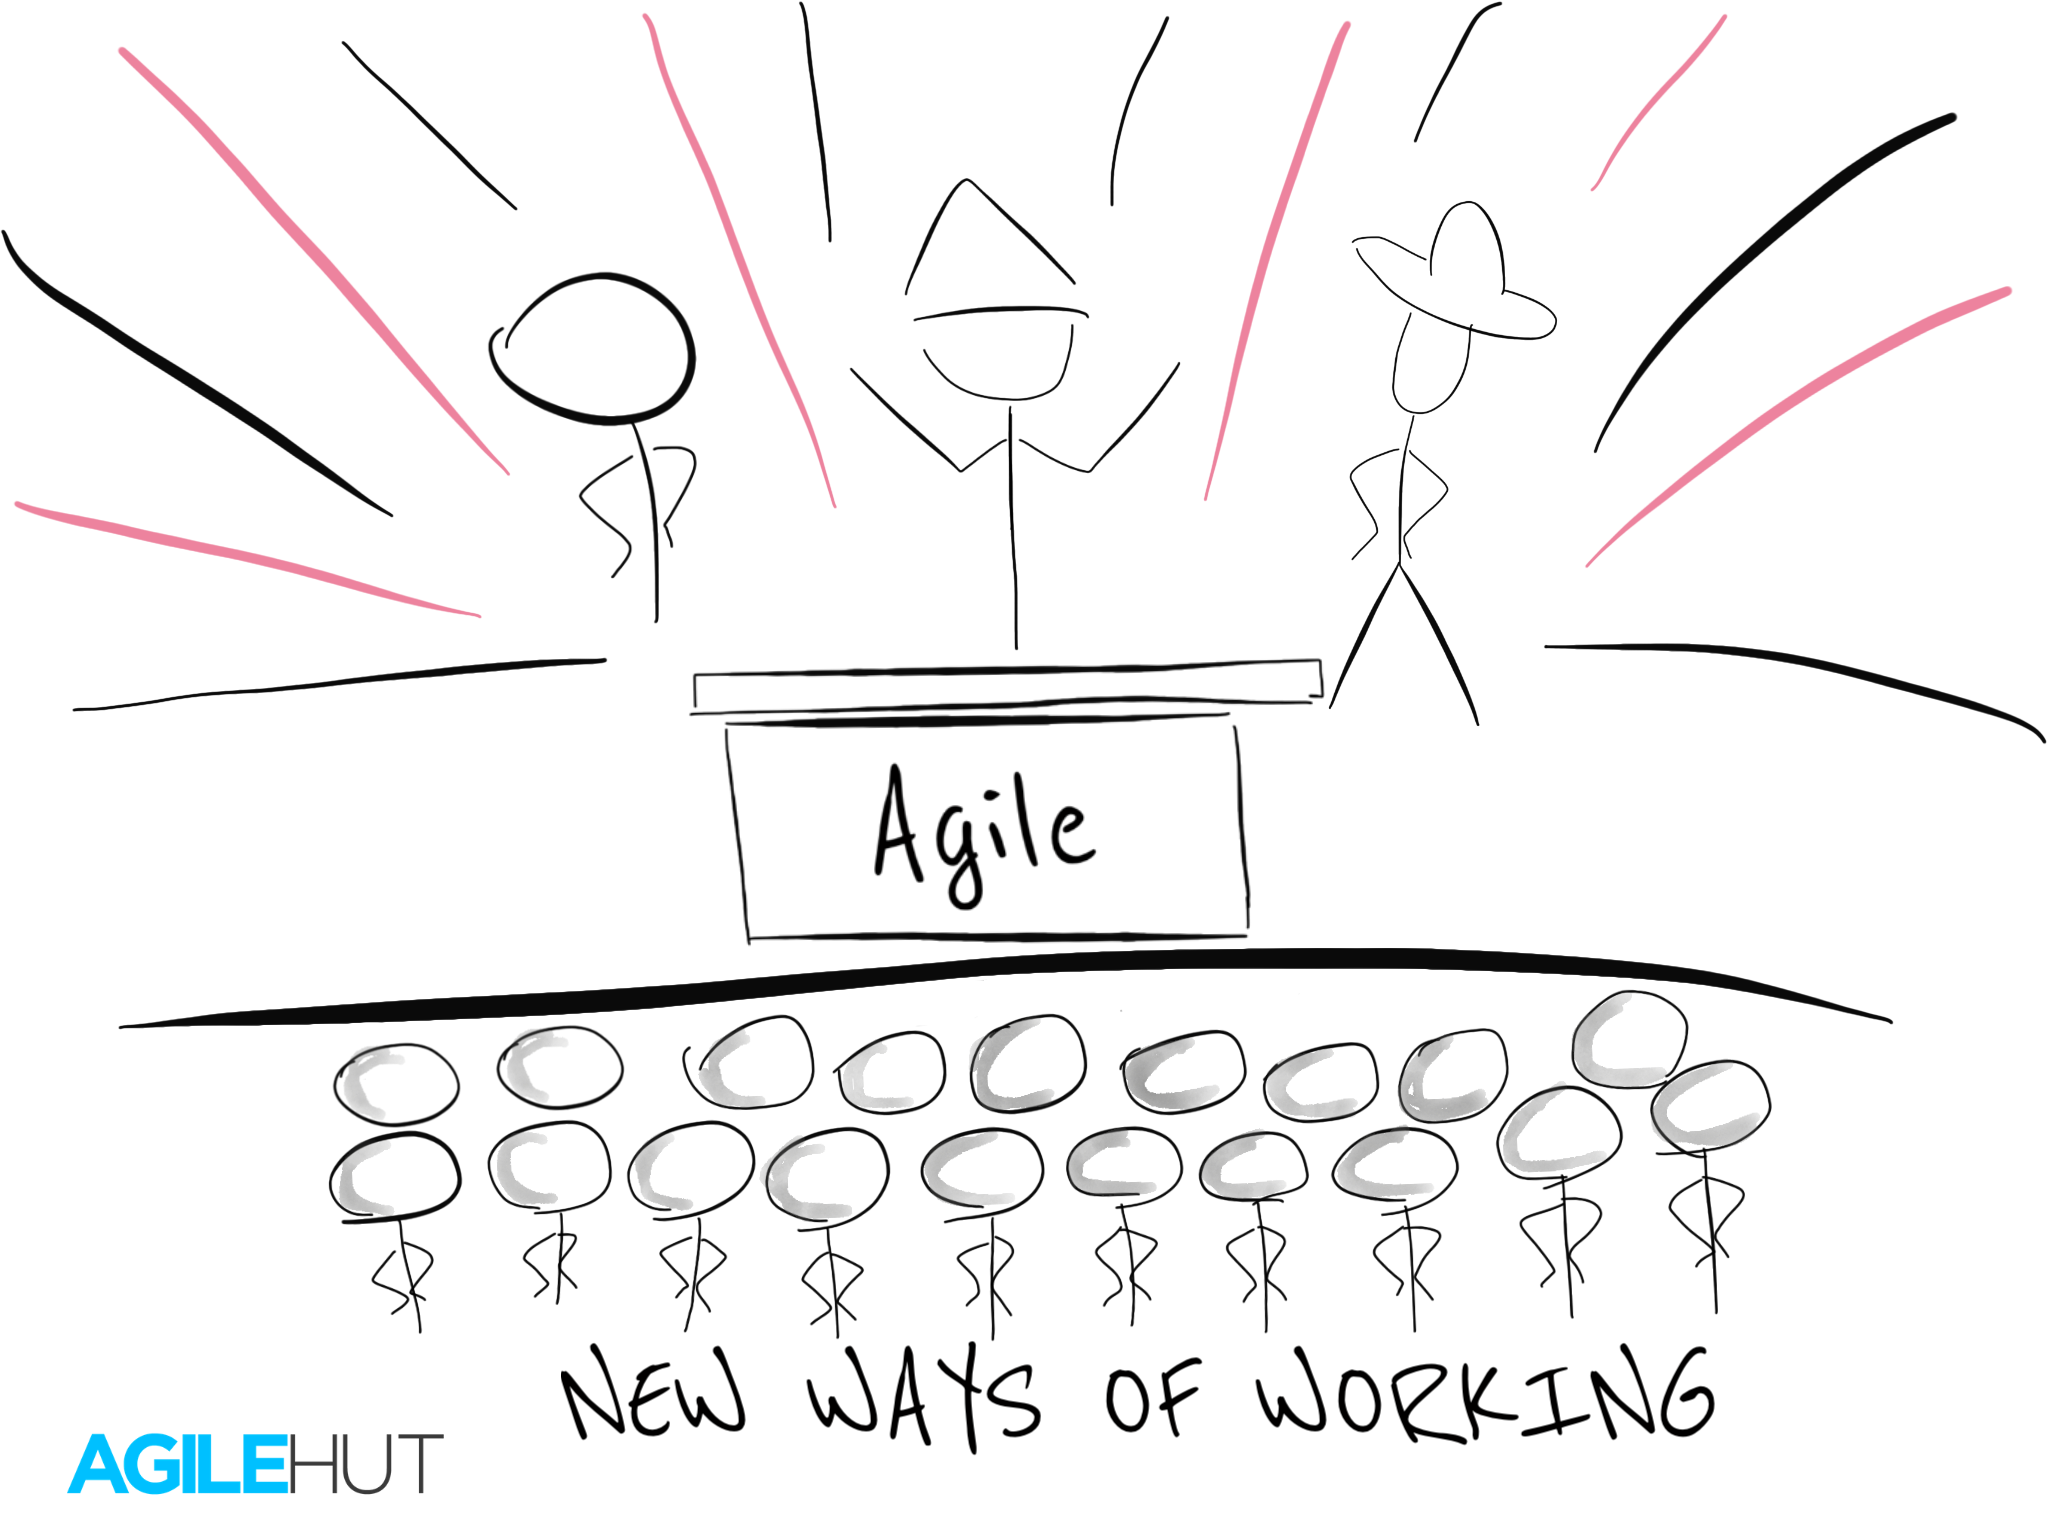 Agile transformation,How to implement Agile,Agile Hut,Agile,Scrum,Agility,Kanban,optinised,agile training,training,coaching